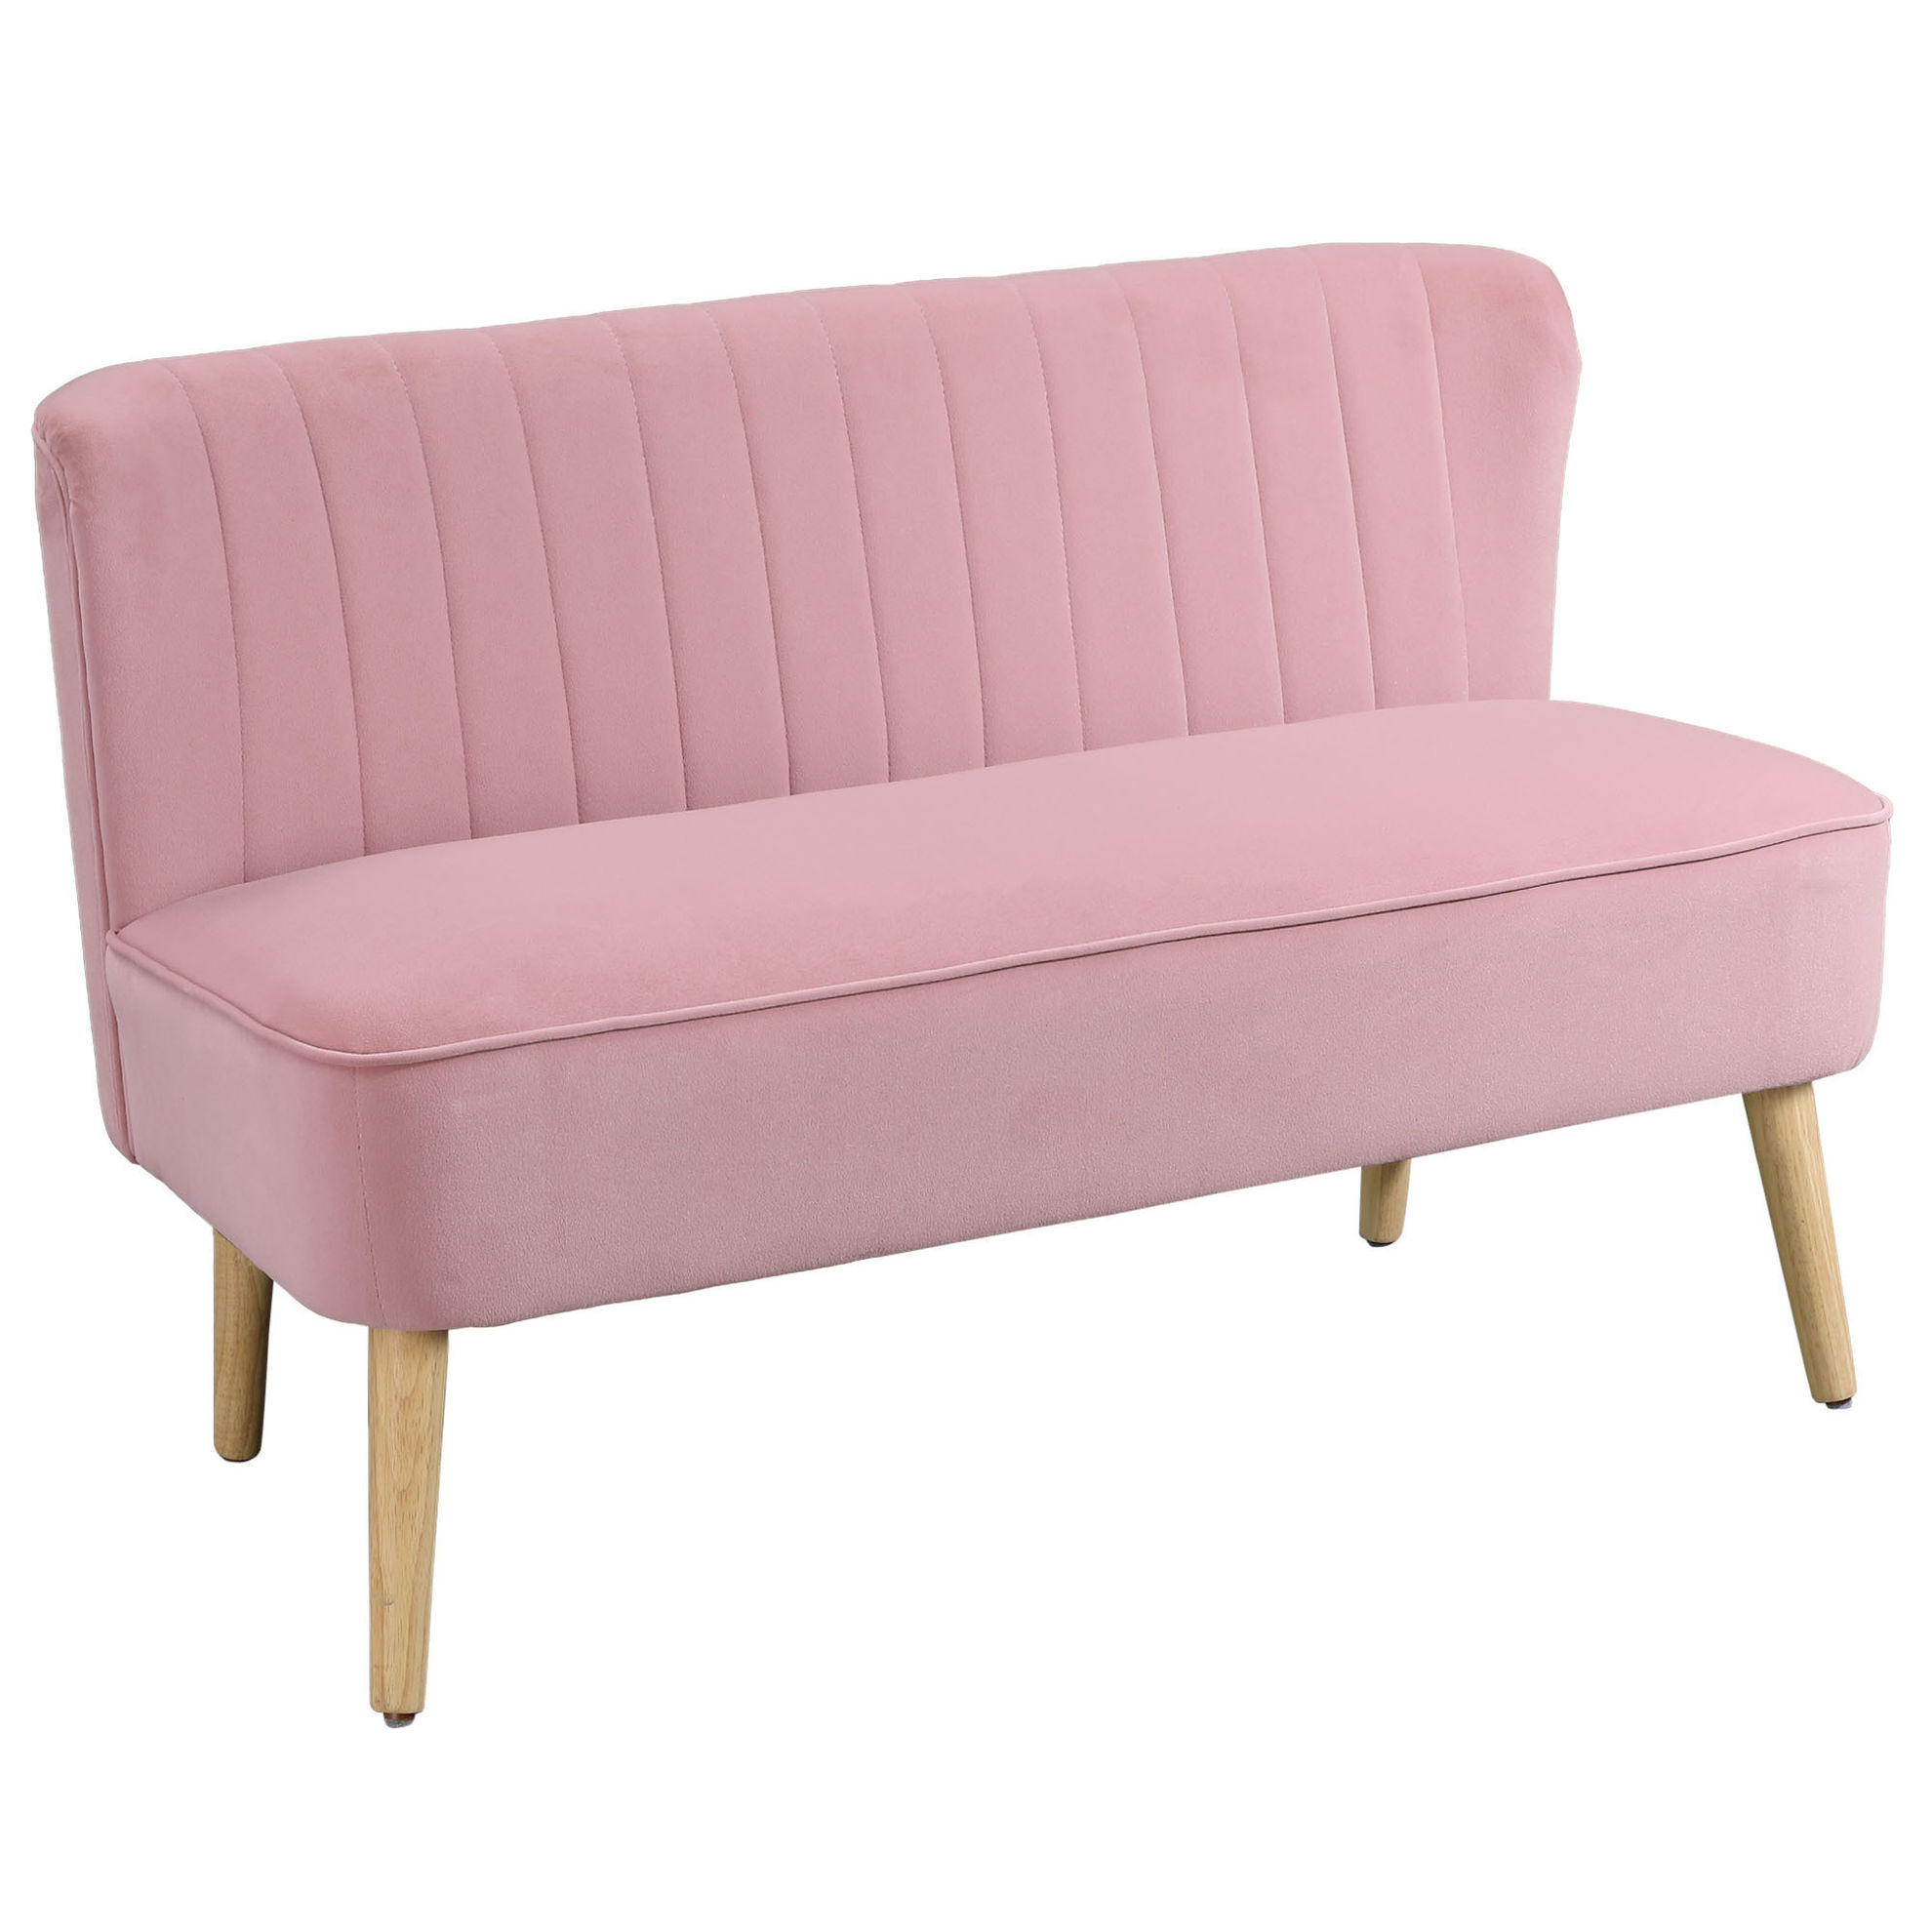 2 Sitzer mit weicher Polsterung Farbe: pink | Weltbild.de